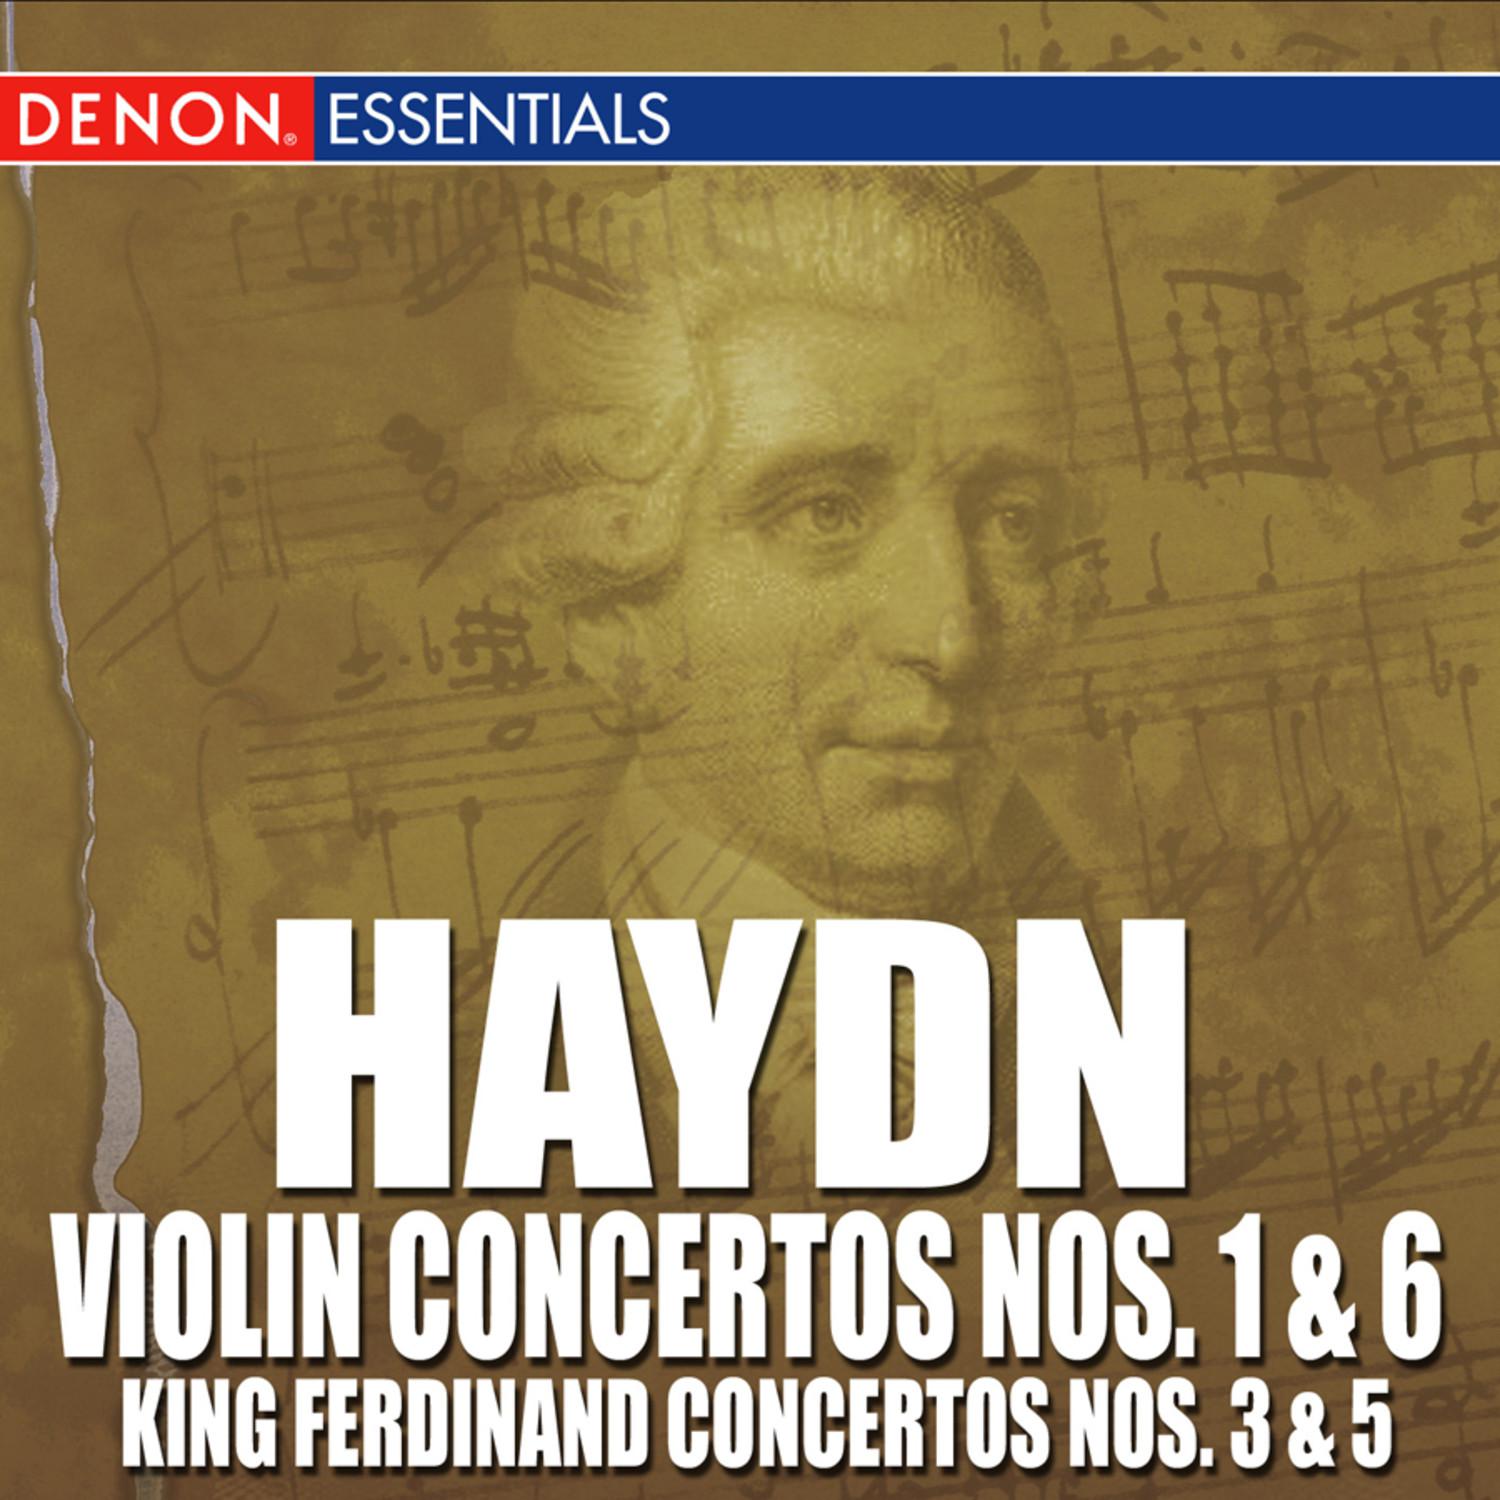 Concerto No. 3 for King Ferdinand IV of Napoli in G Major, Hob. VII / 3 "Lyren Concerto No. 3": III. Finale: Allegro